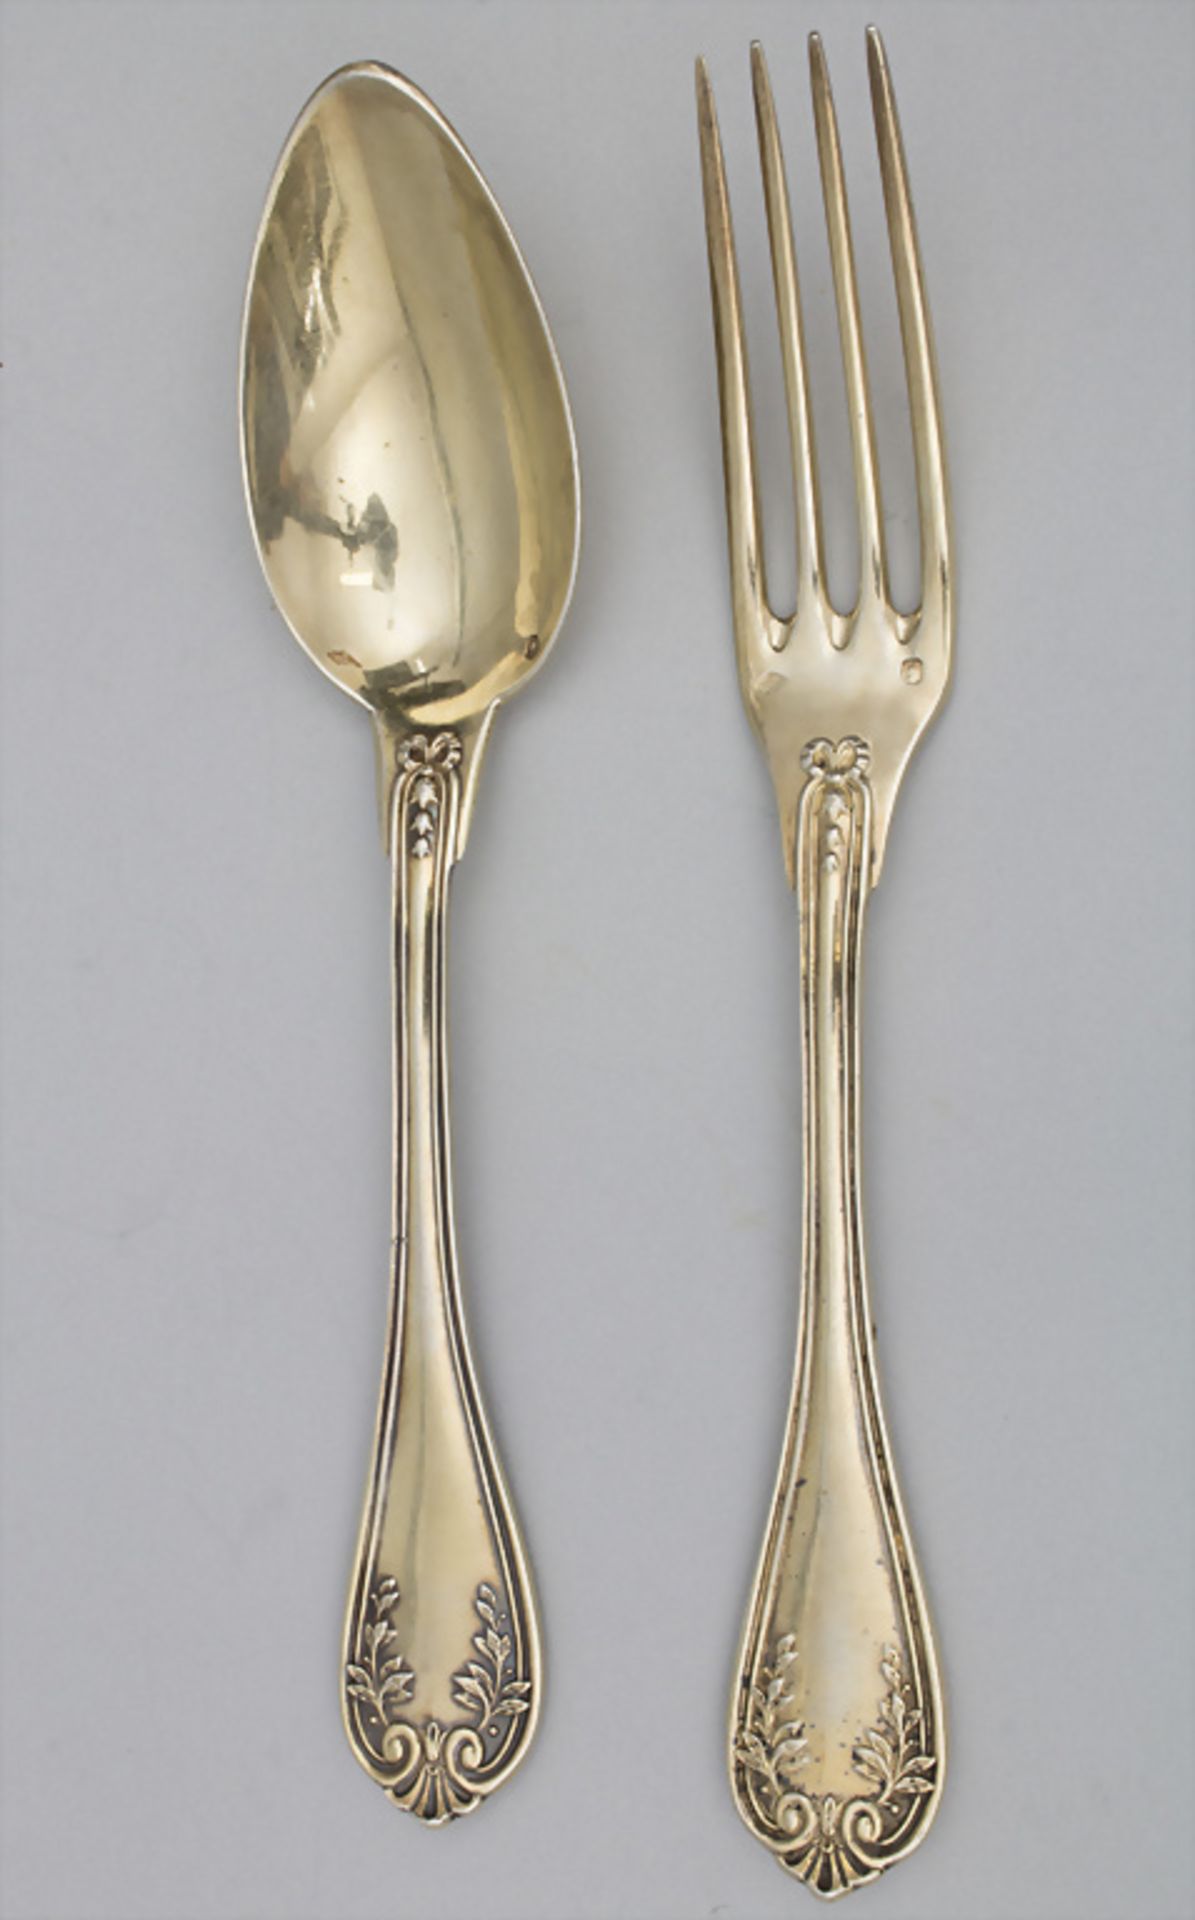 12-teiliges Silberbesteck / A 12-part silver cutlery, Veyrat, Paris, um 1900 - Bild 3 aus 8